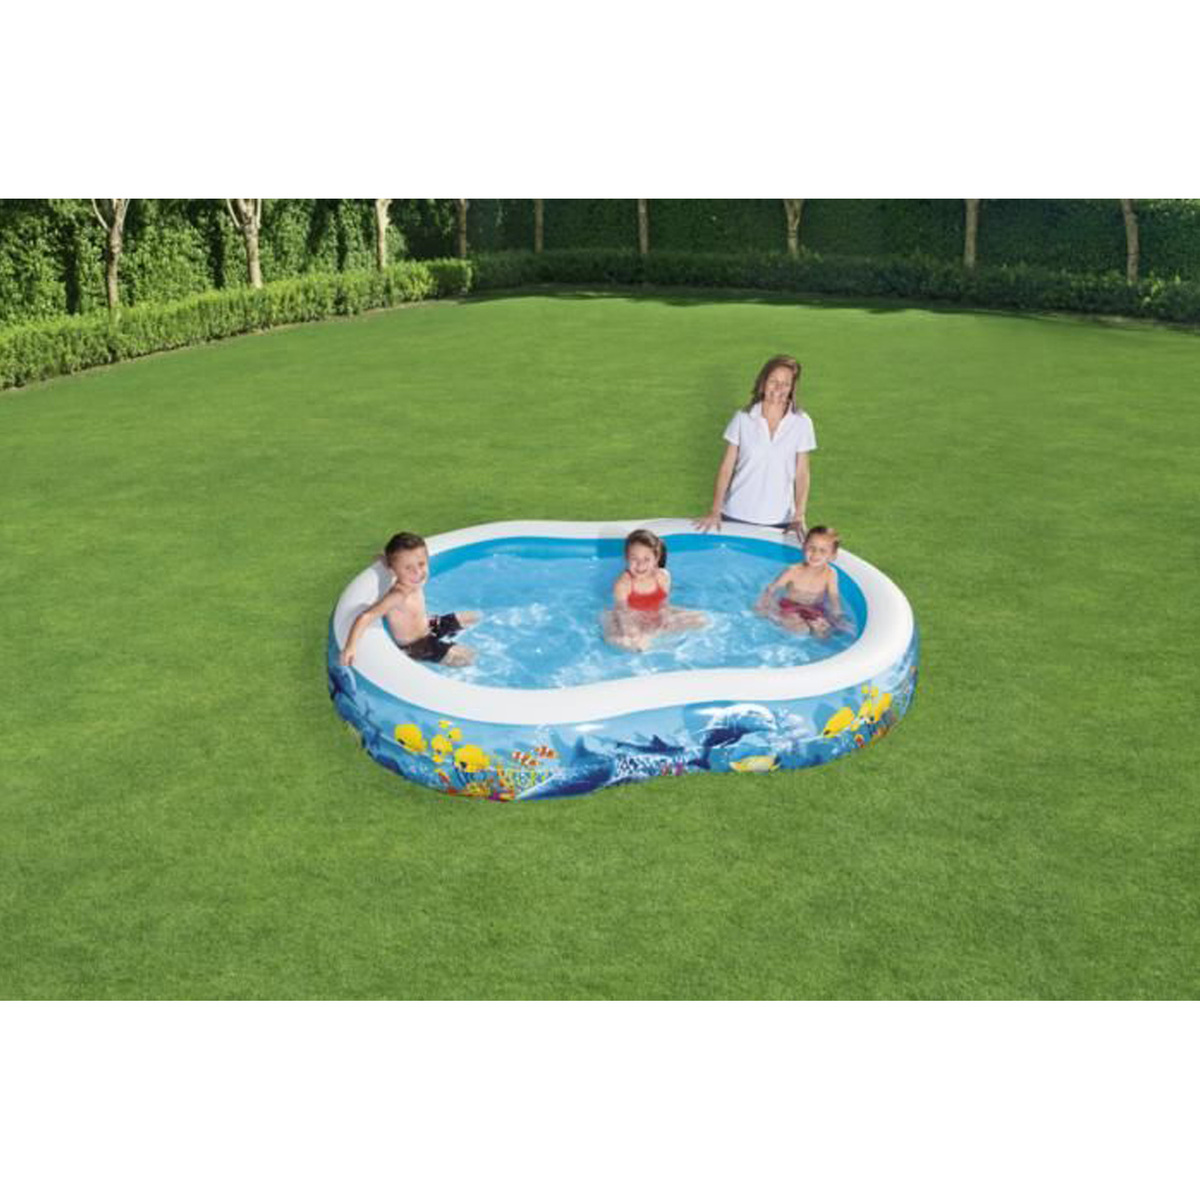 Bestway Inflatable Kids Play Pool, 54118